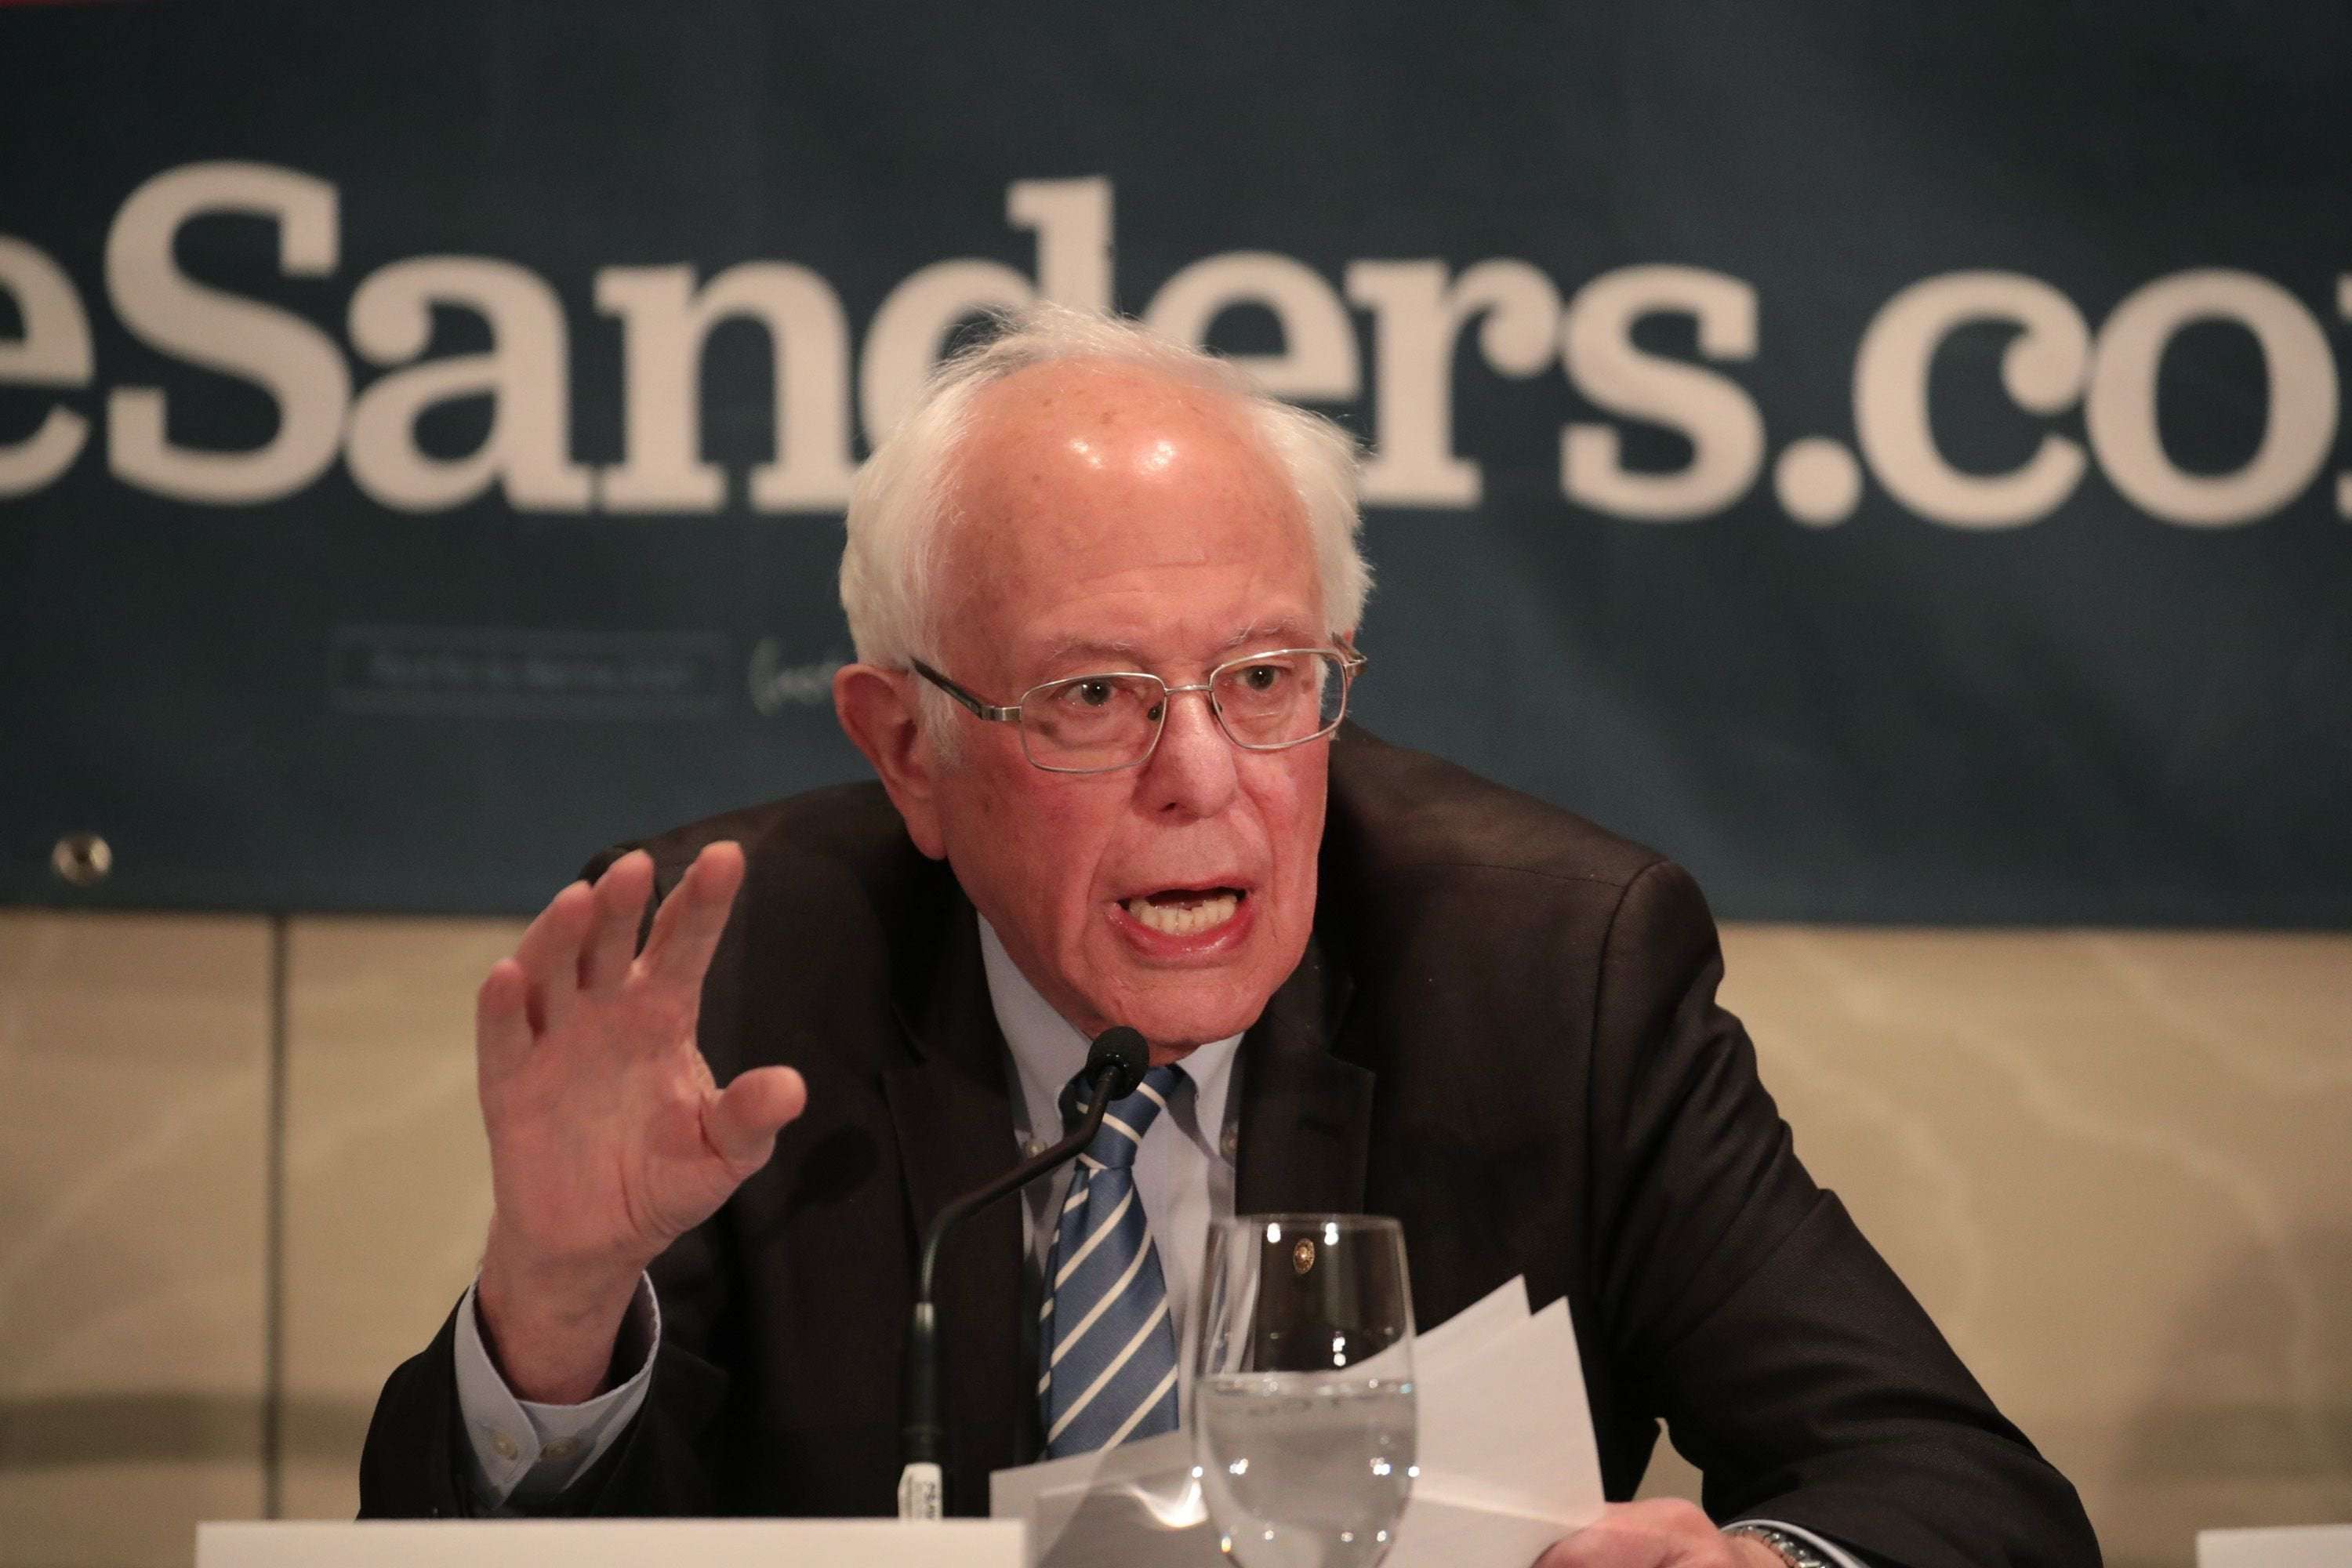 image for Bernie Sanders says he's staying in race, looks forward to debating Joe Biden